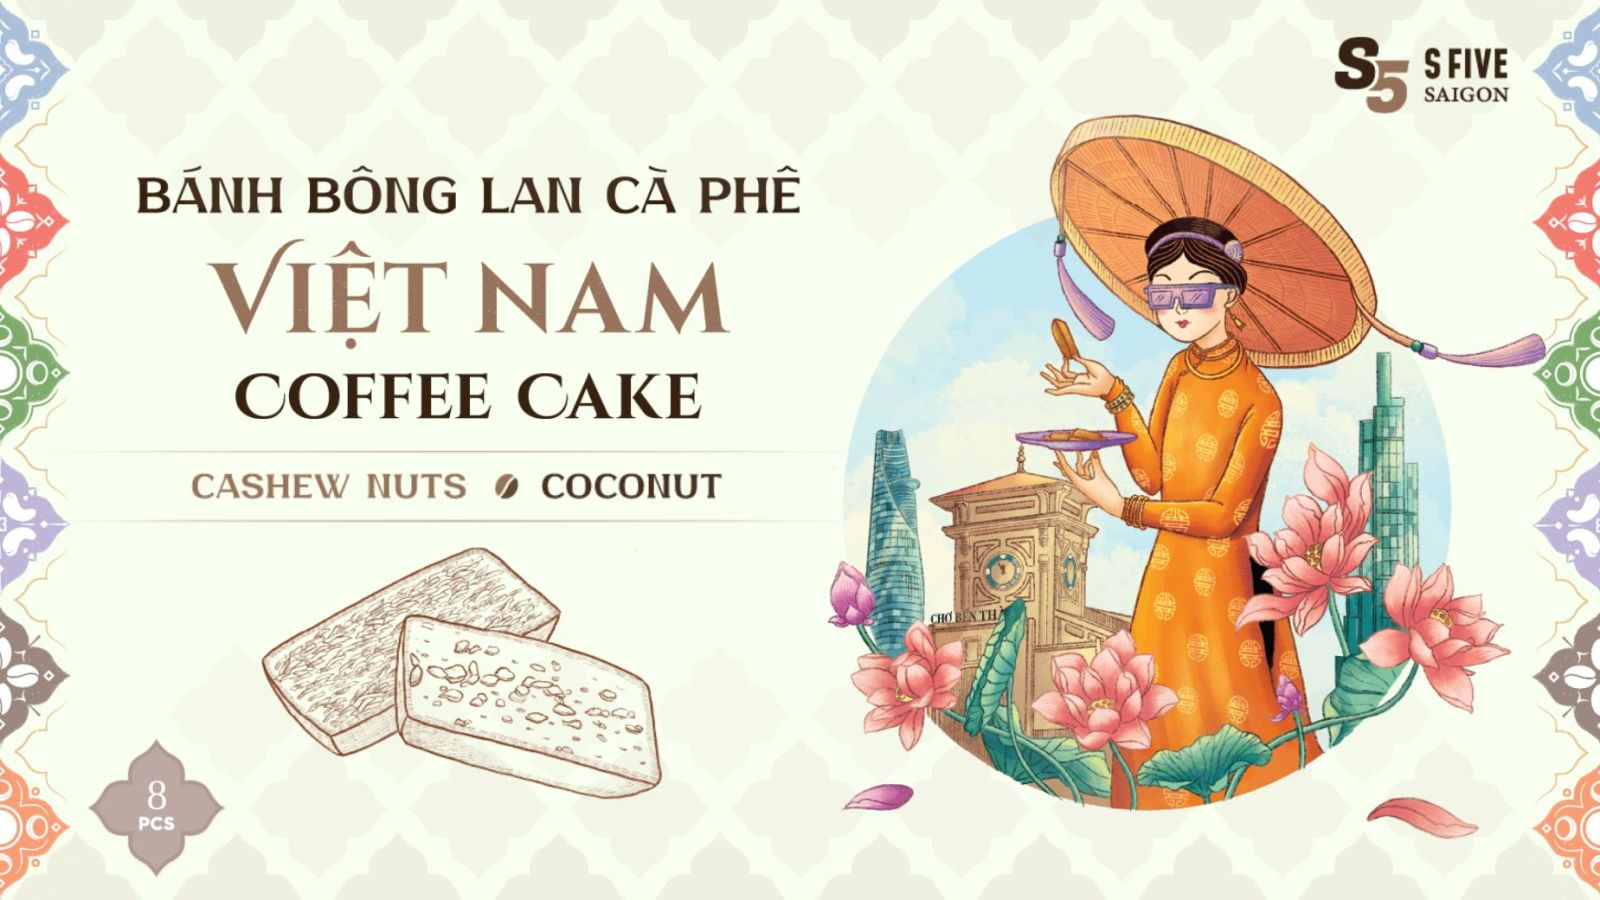 VIETNAM COFFEE CAKE GIFT BOX